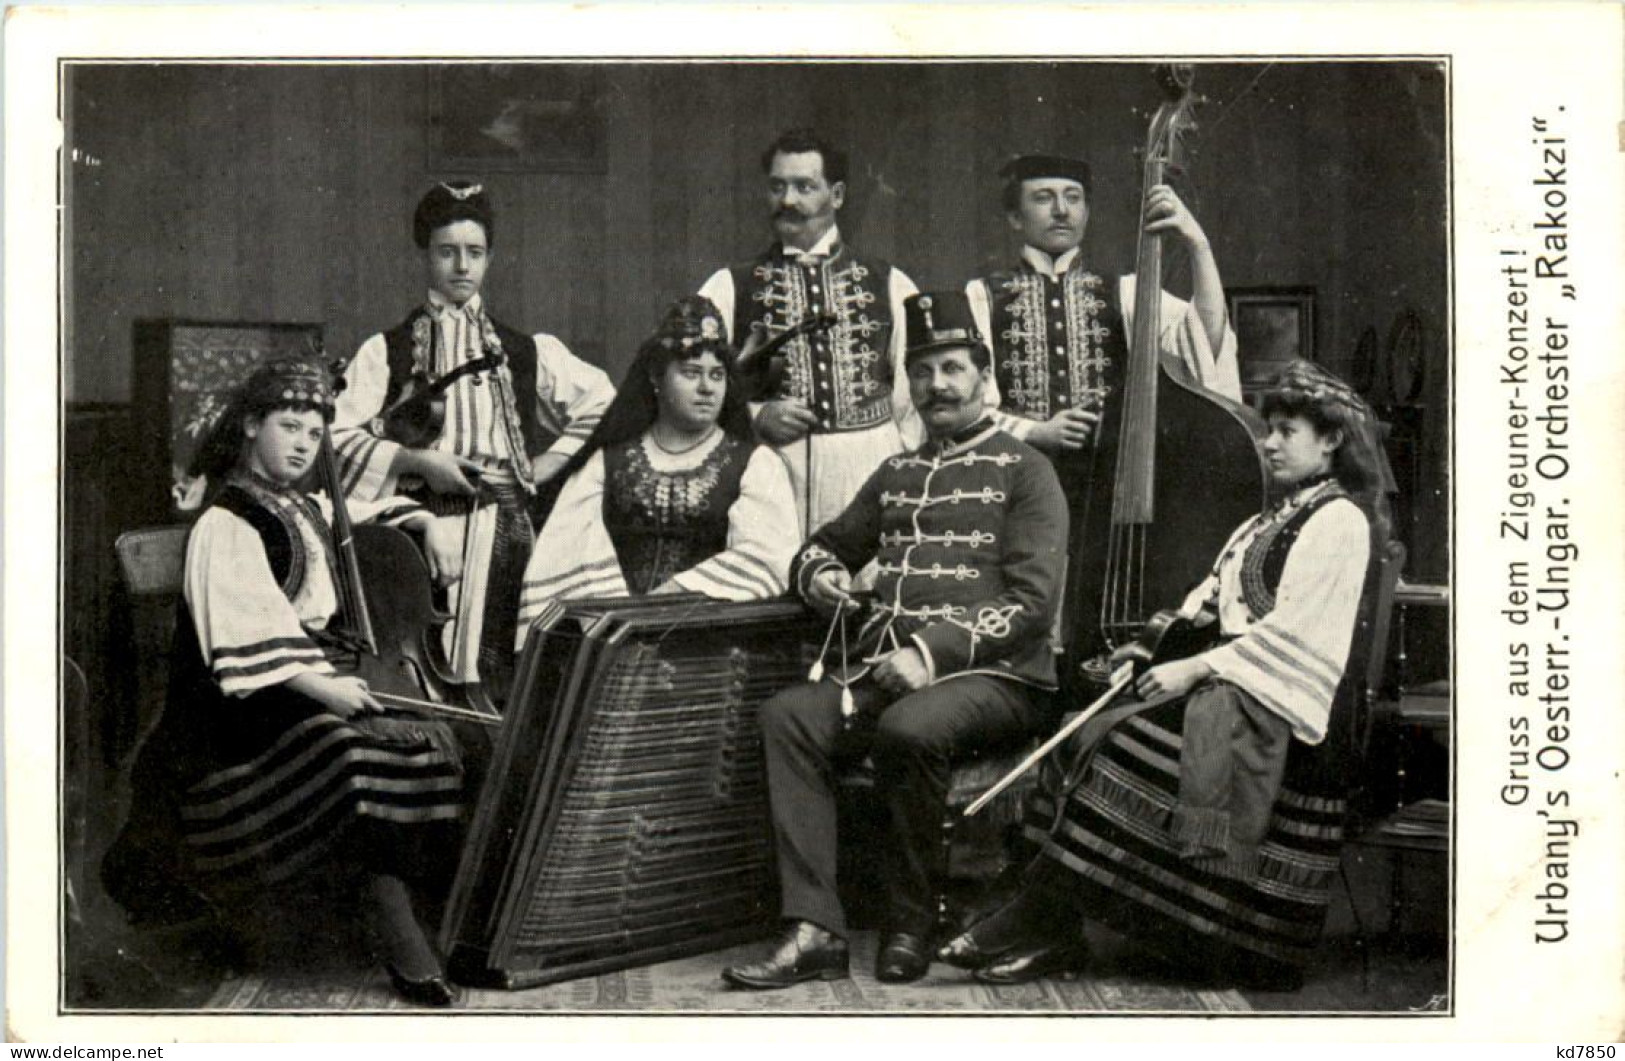 Gruss Aus Dem Zigeuner Concert - Singers & Musicians